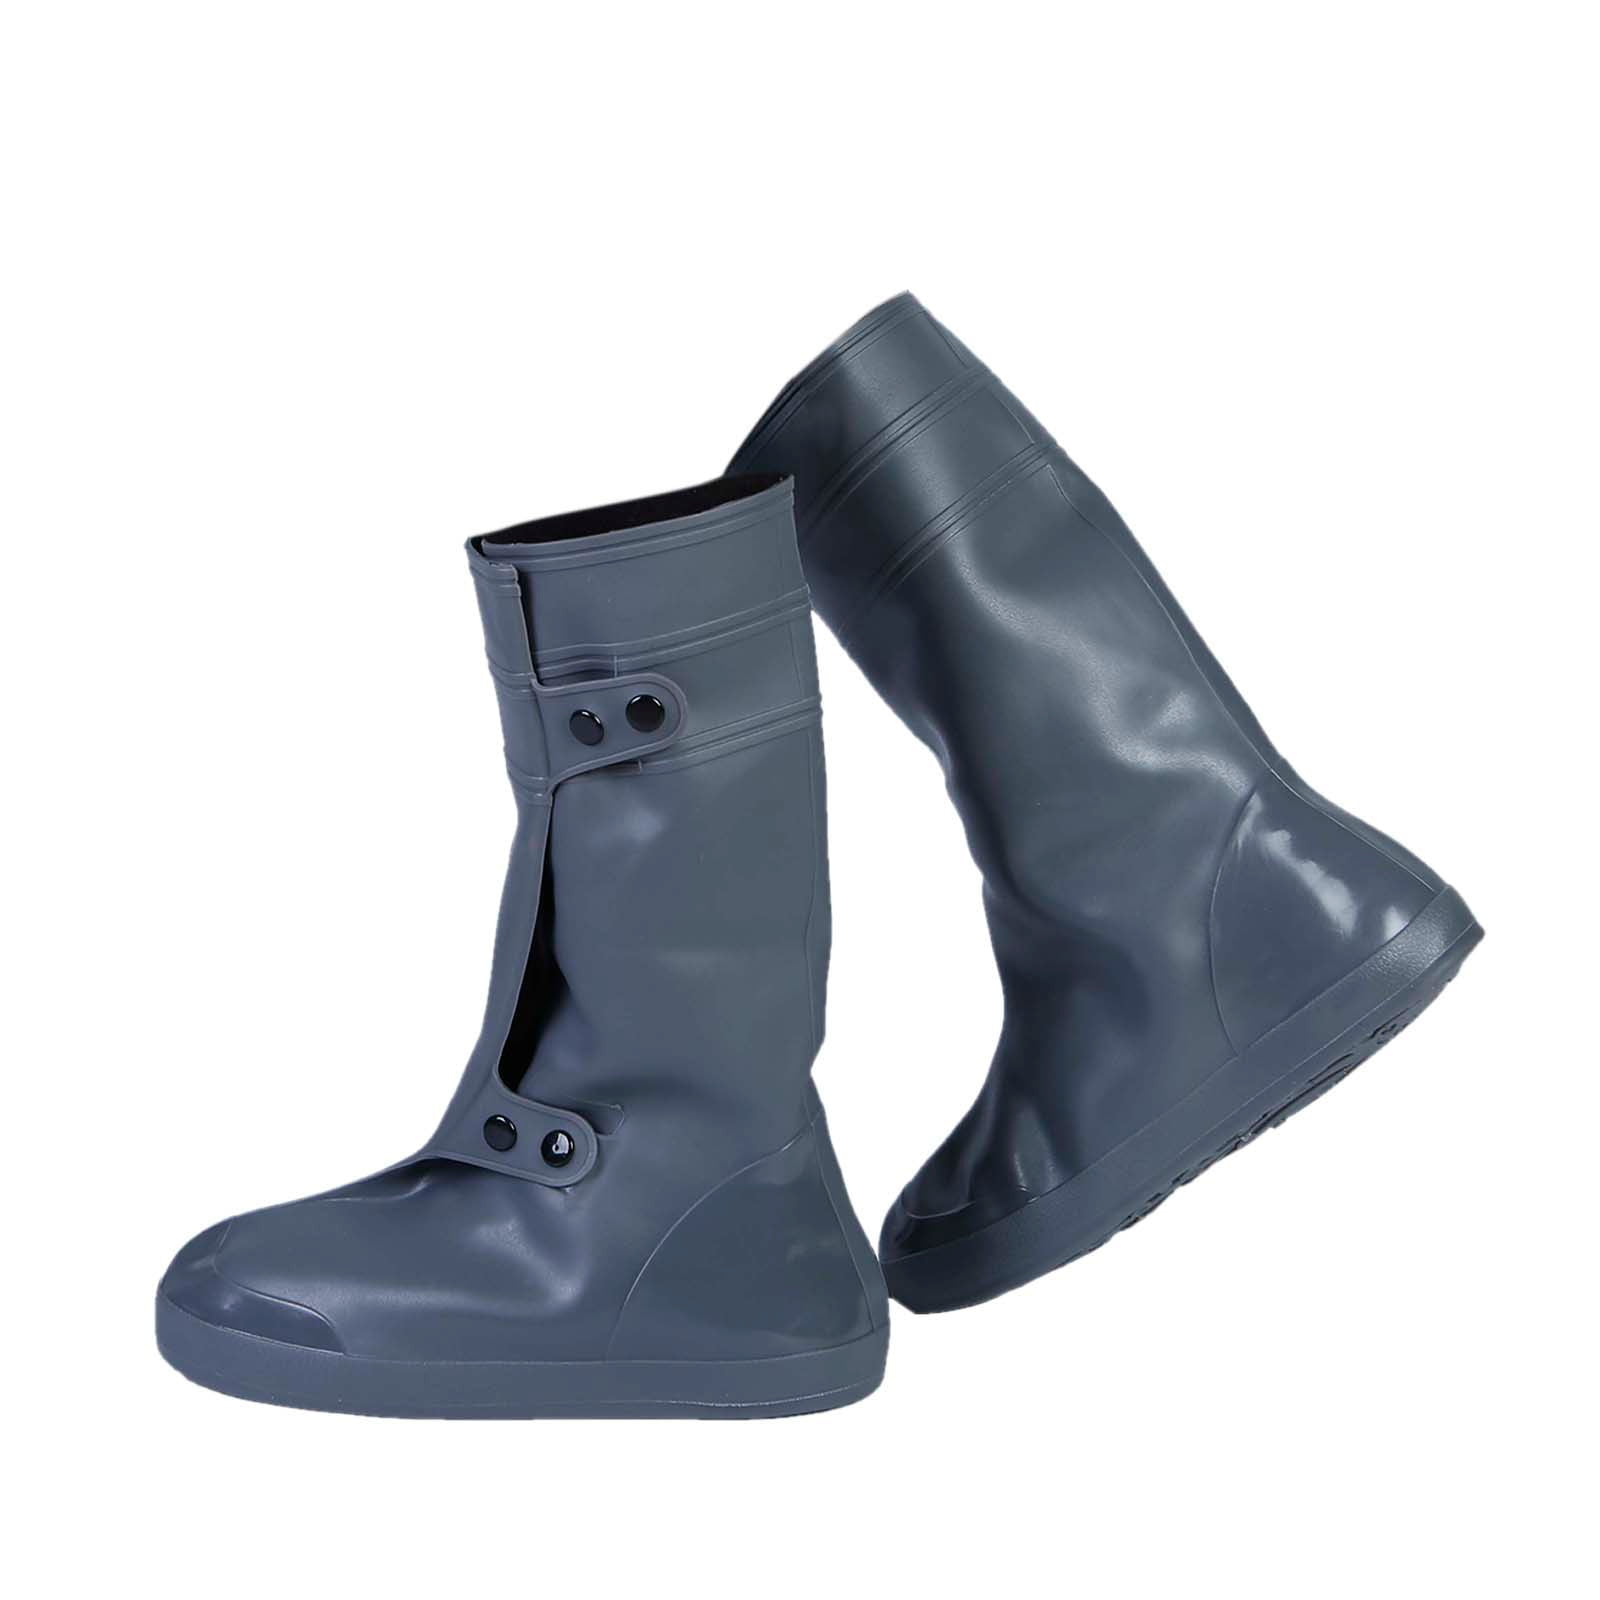 2pcs S-2XL Reusable Waterproof Shoe Covers Slip-resistant Child Adult Rain Boots 